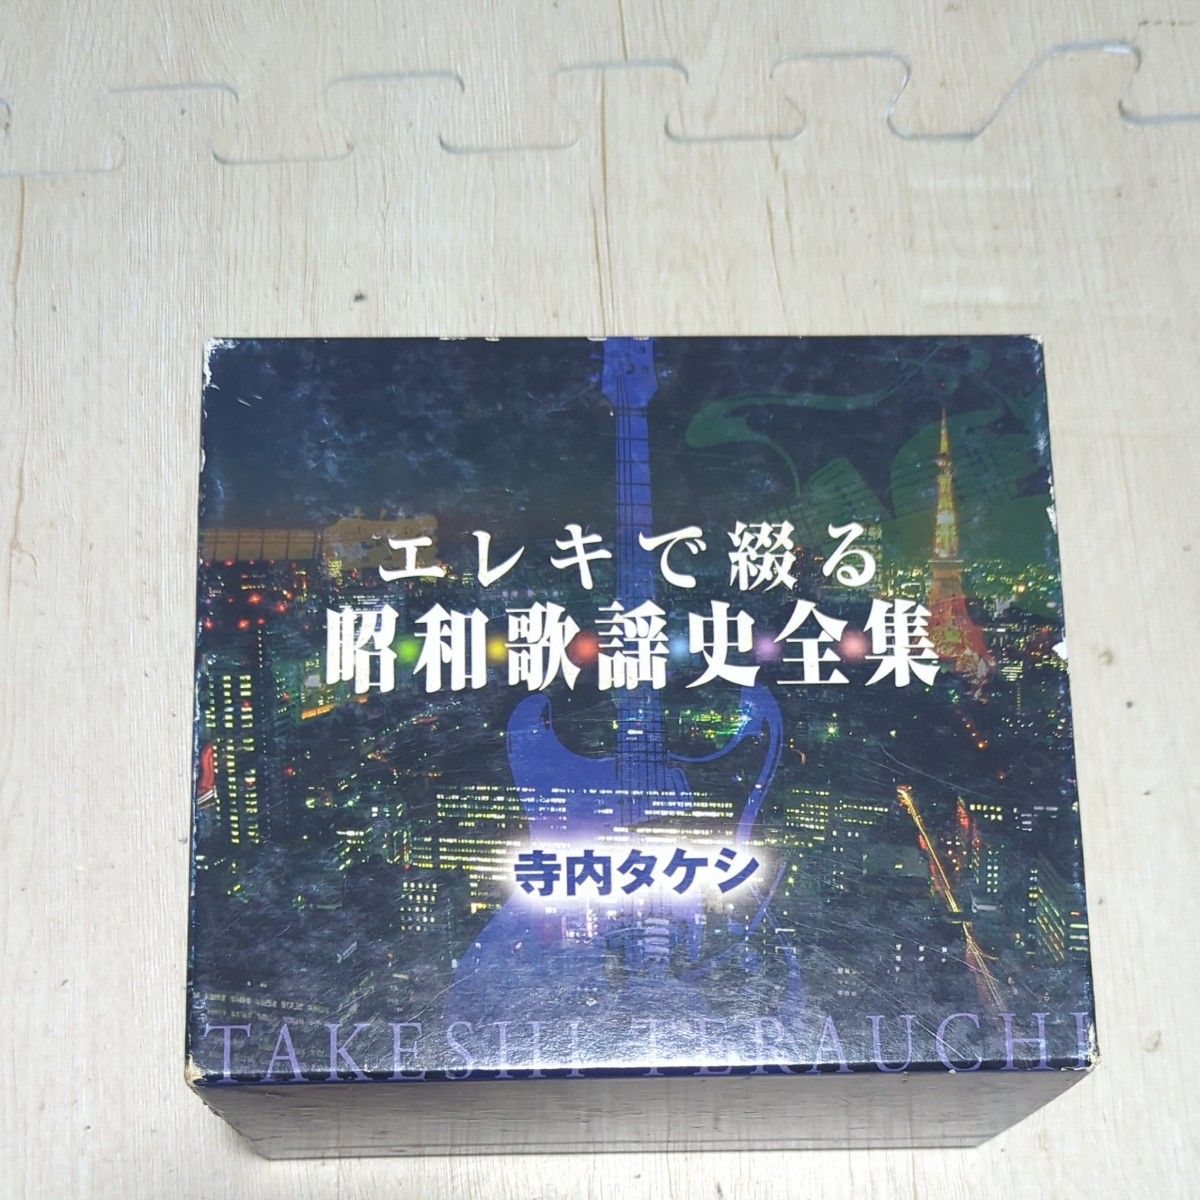 ■7枚組■ エレキで綴る 昭和歌謡史全集